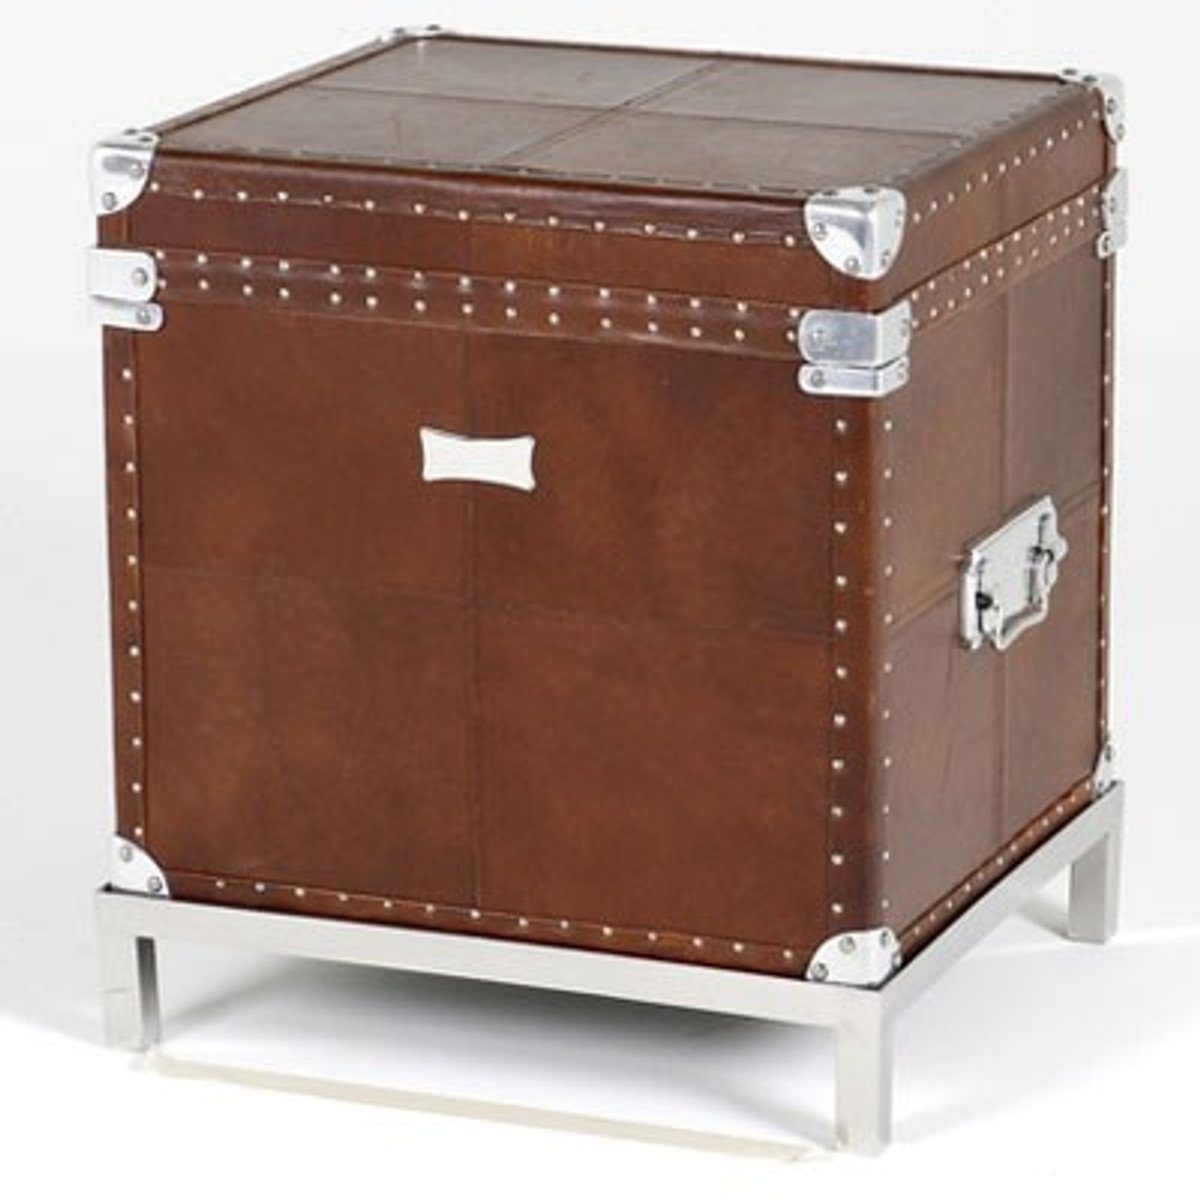 Casa Padrino Beistelltisch Vintage Echtleder Koffertisch Braun 45 x 40 x H50 cm - Echt Leder Vintage Look